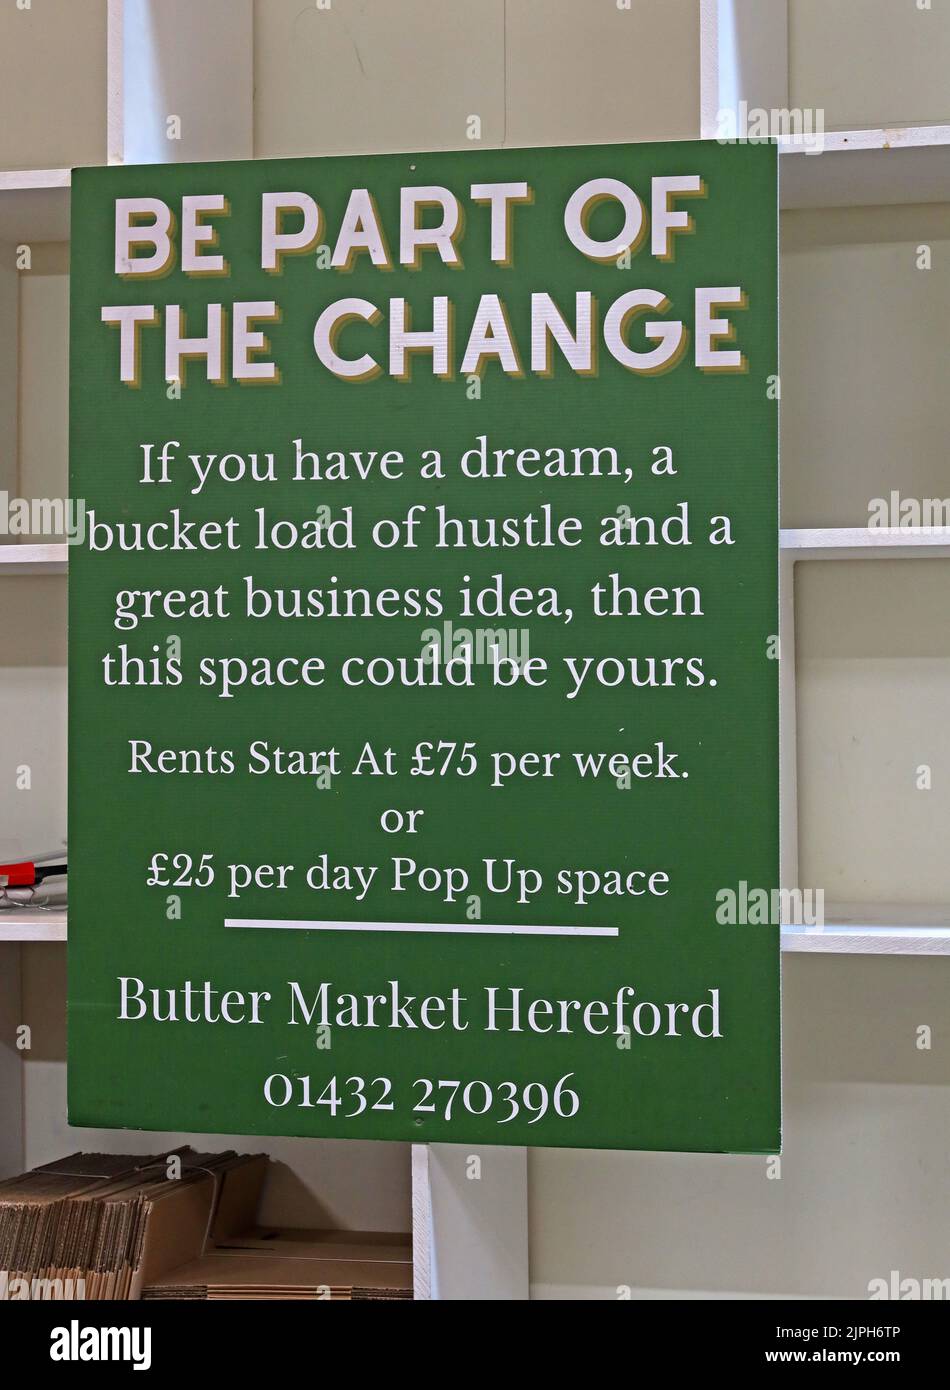 Entra a far parte del Change - firma presso il mercato del burro di Hereford, invitando nuove aziende, bancarelle o pop up space, a partire da $ £25 al giorno Foto Stock